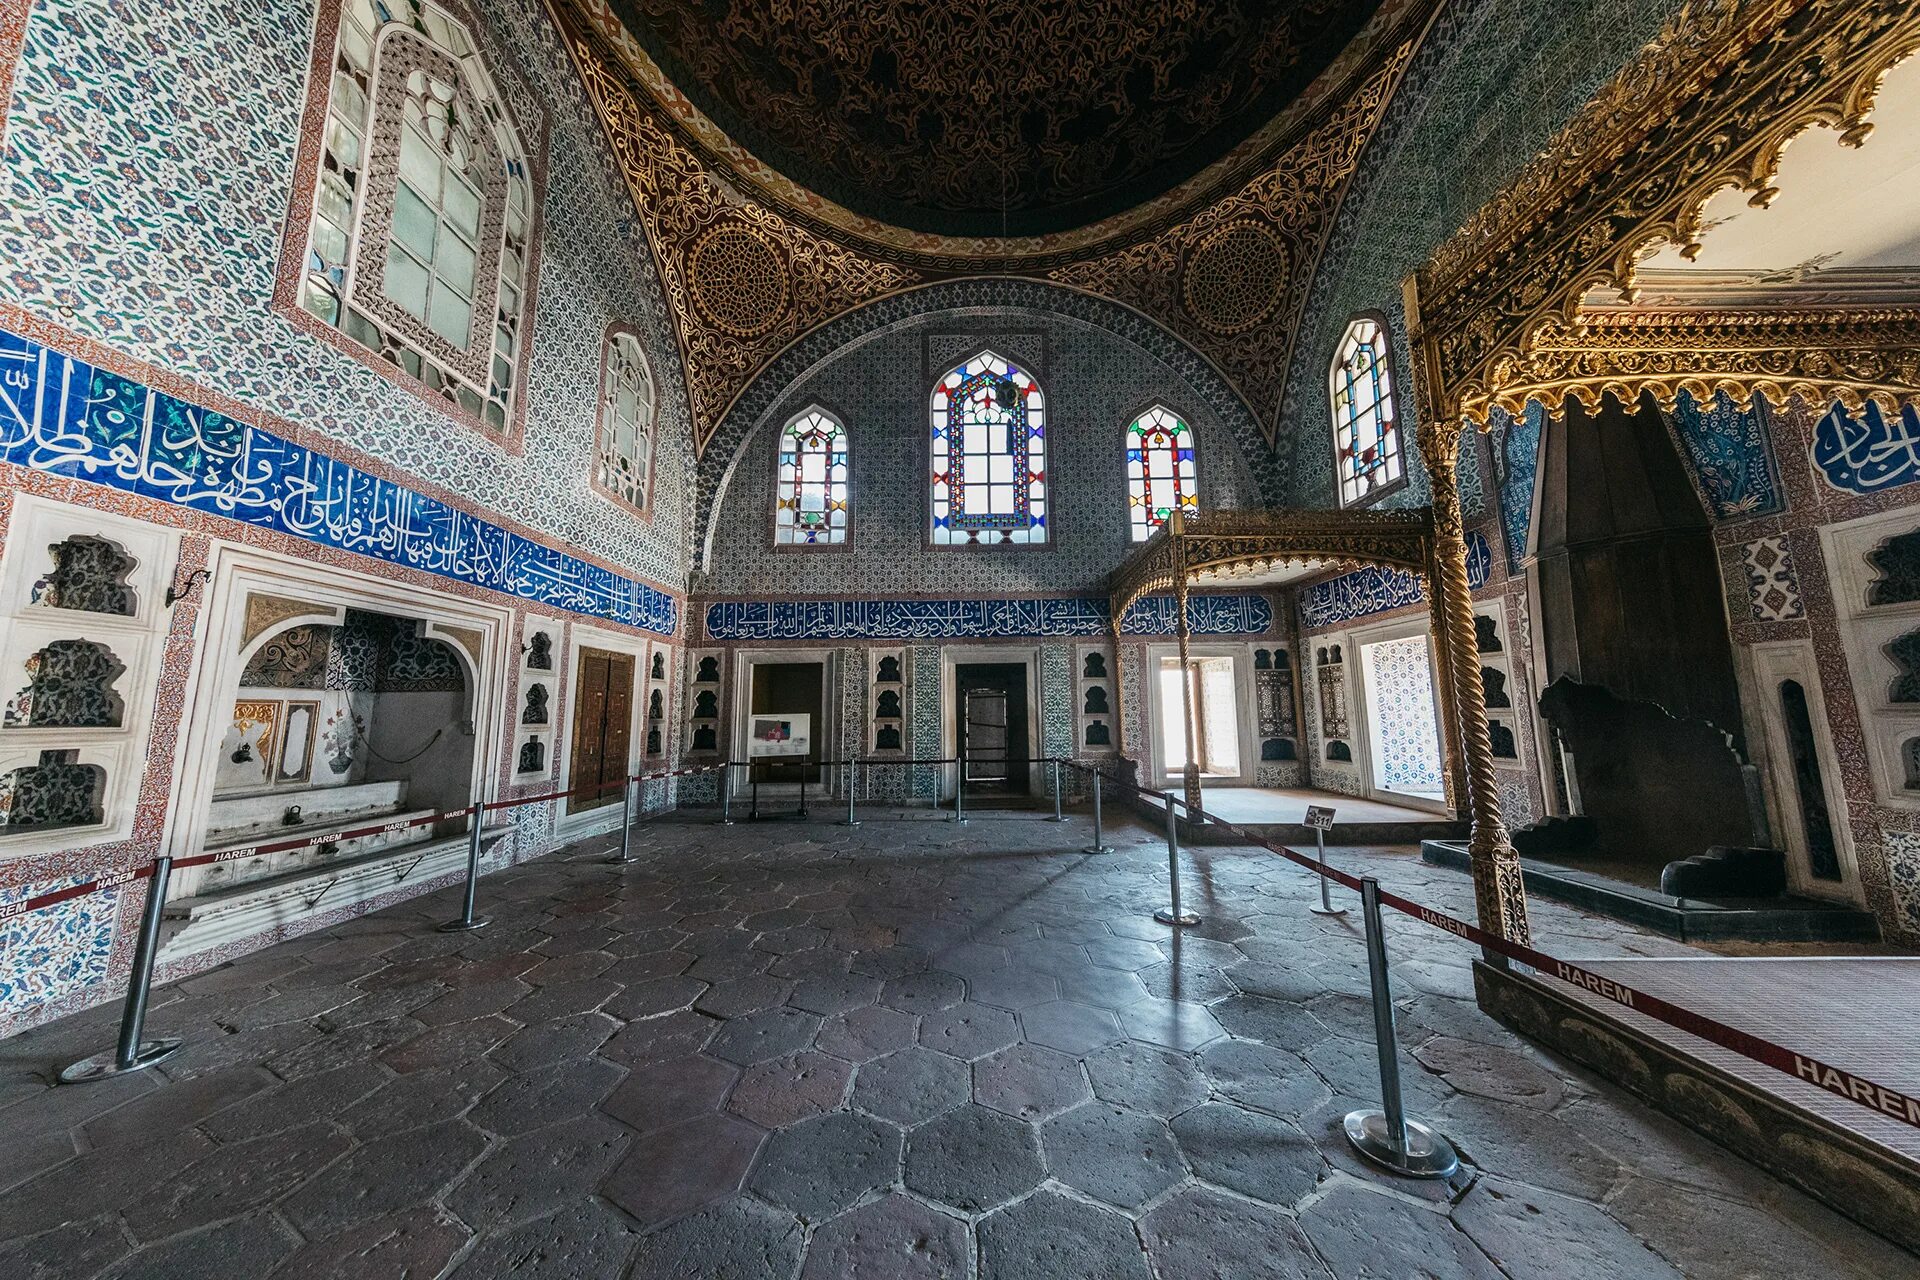 Где жили султаны. Дворец Топкапы в Стамбуле. Дворец Топкапы в Стамбуле гарем. Турция дворец Султана Сулеймана. Дворец Топкапы - Стамбул, Турция внутри.